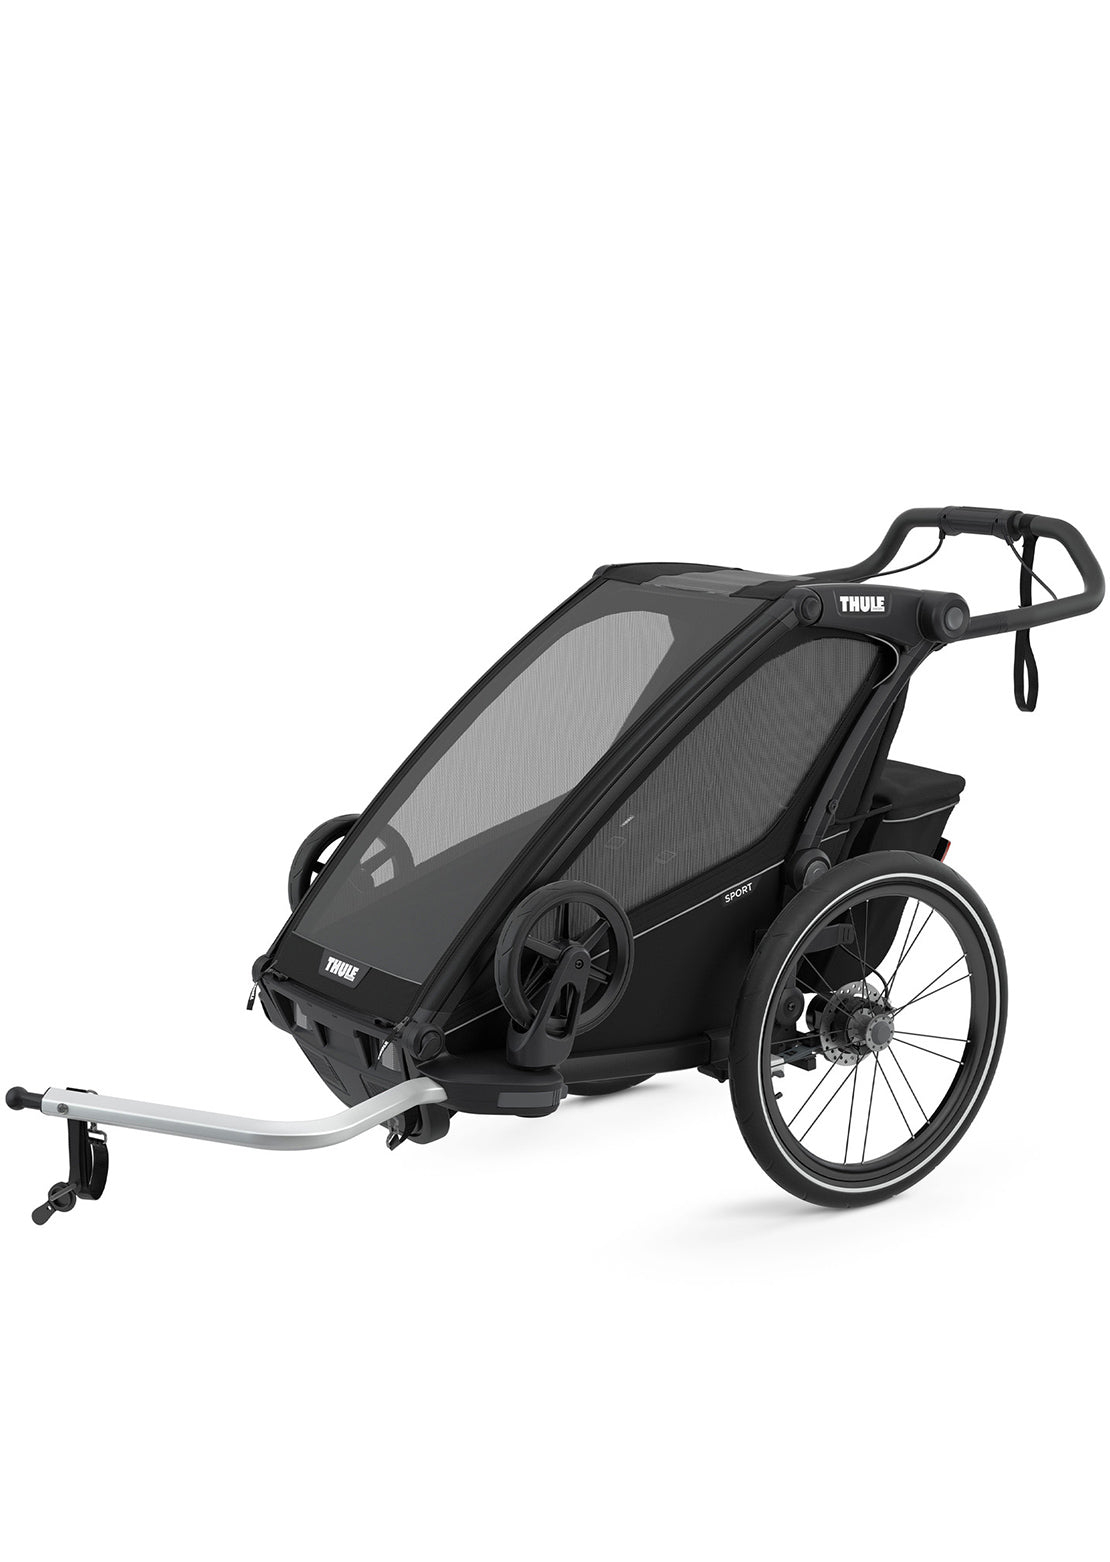 Thule Chariot Sport 1 Multisport Child Carrier Black/Black Frame